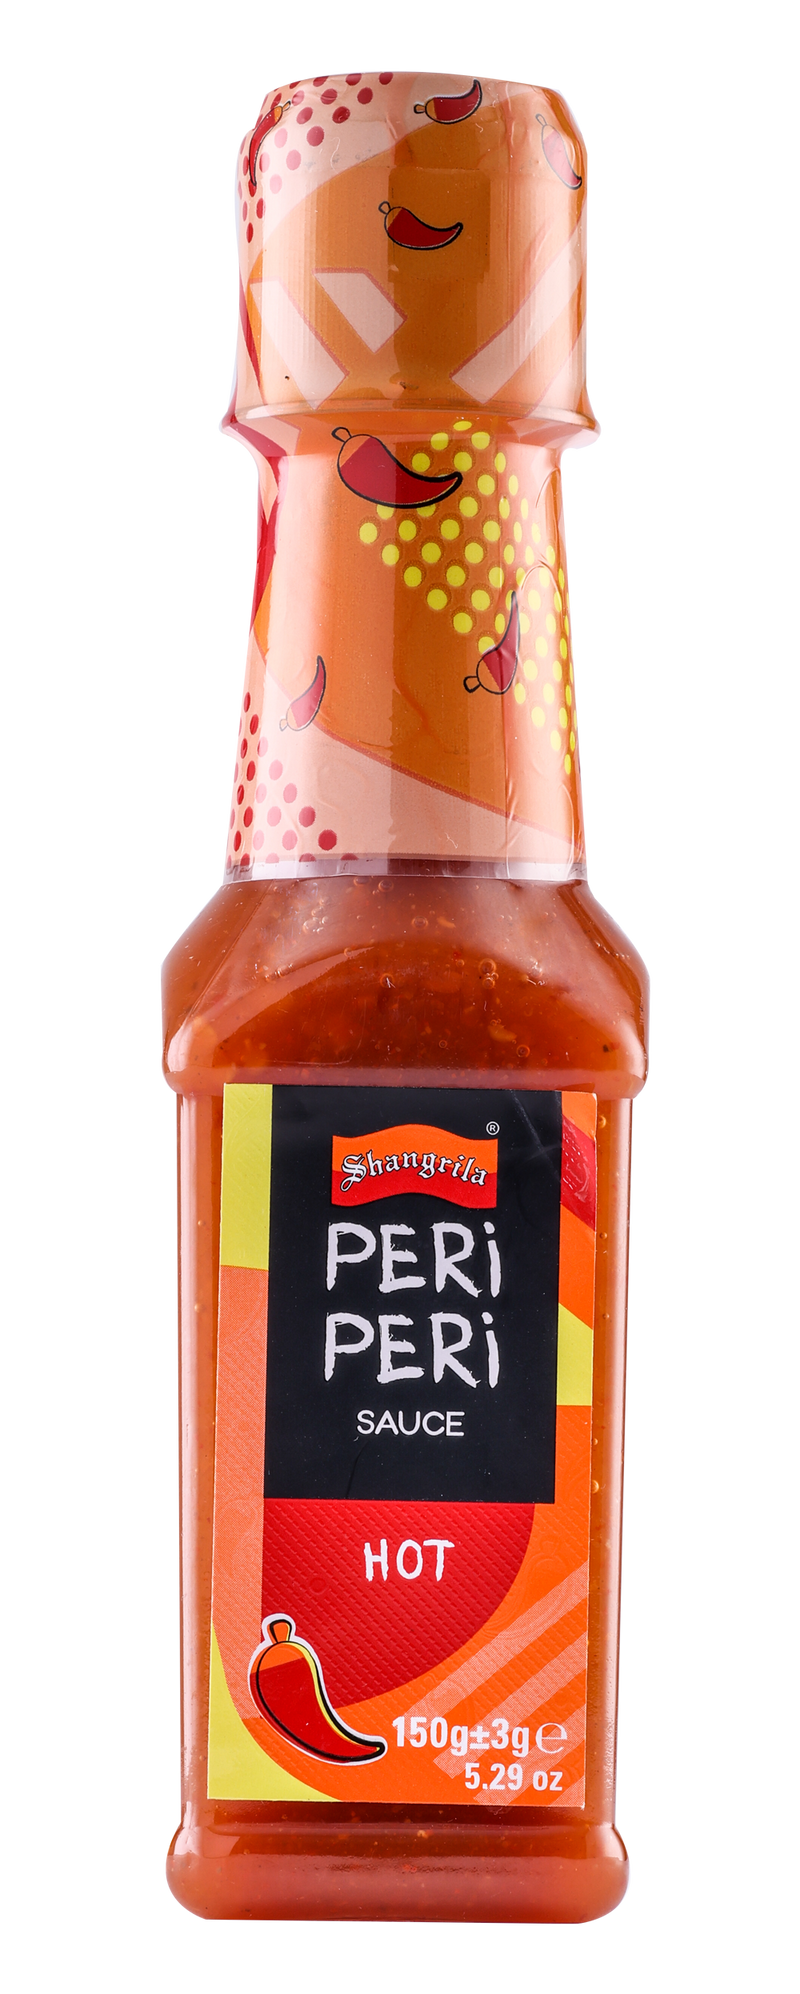 Shangrila Peri Peri Sauce Hot 150gm